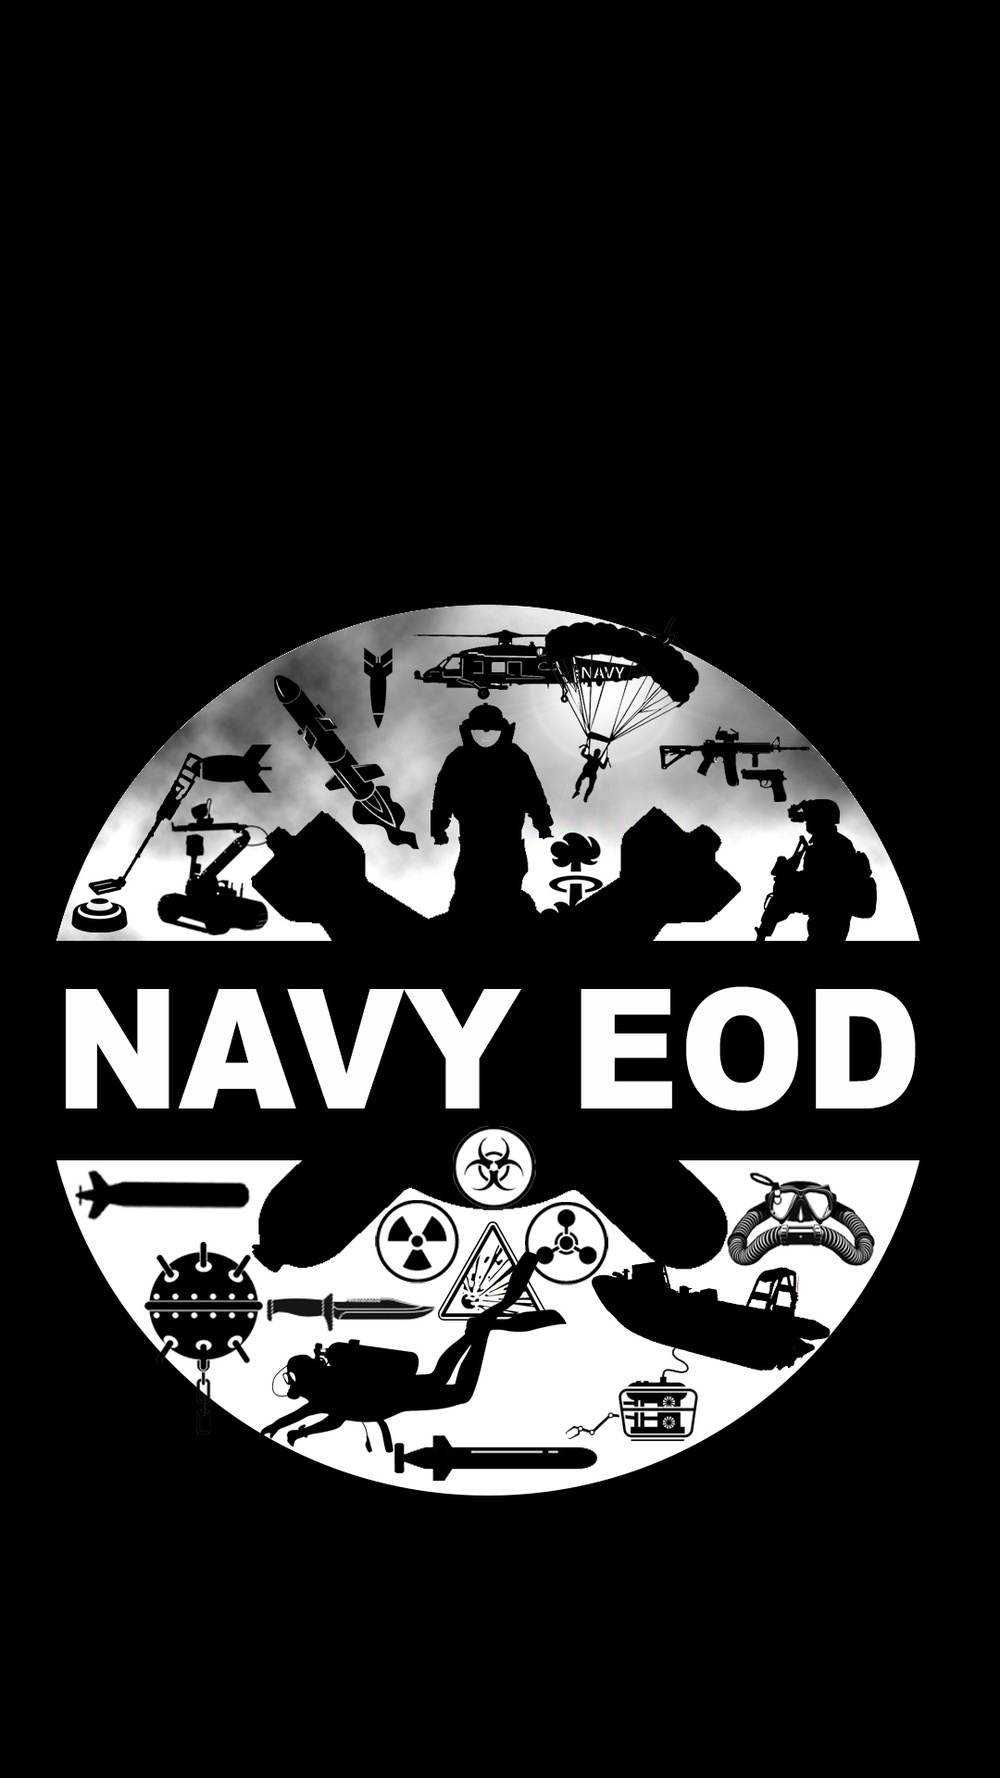 Navy EOD Honors EOD Technicians